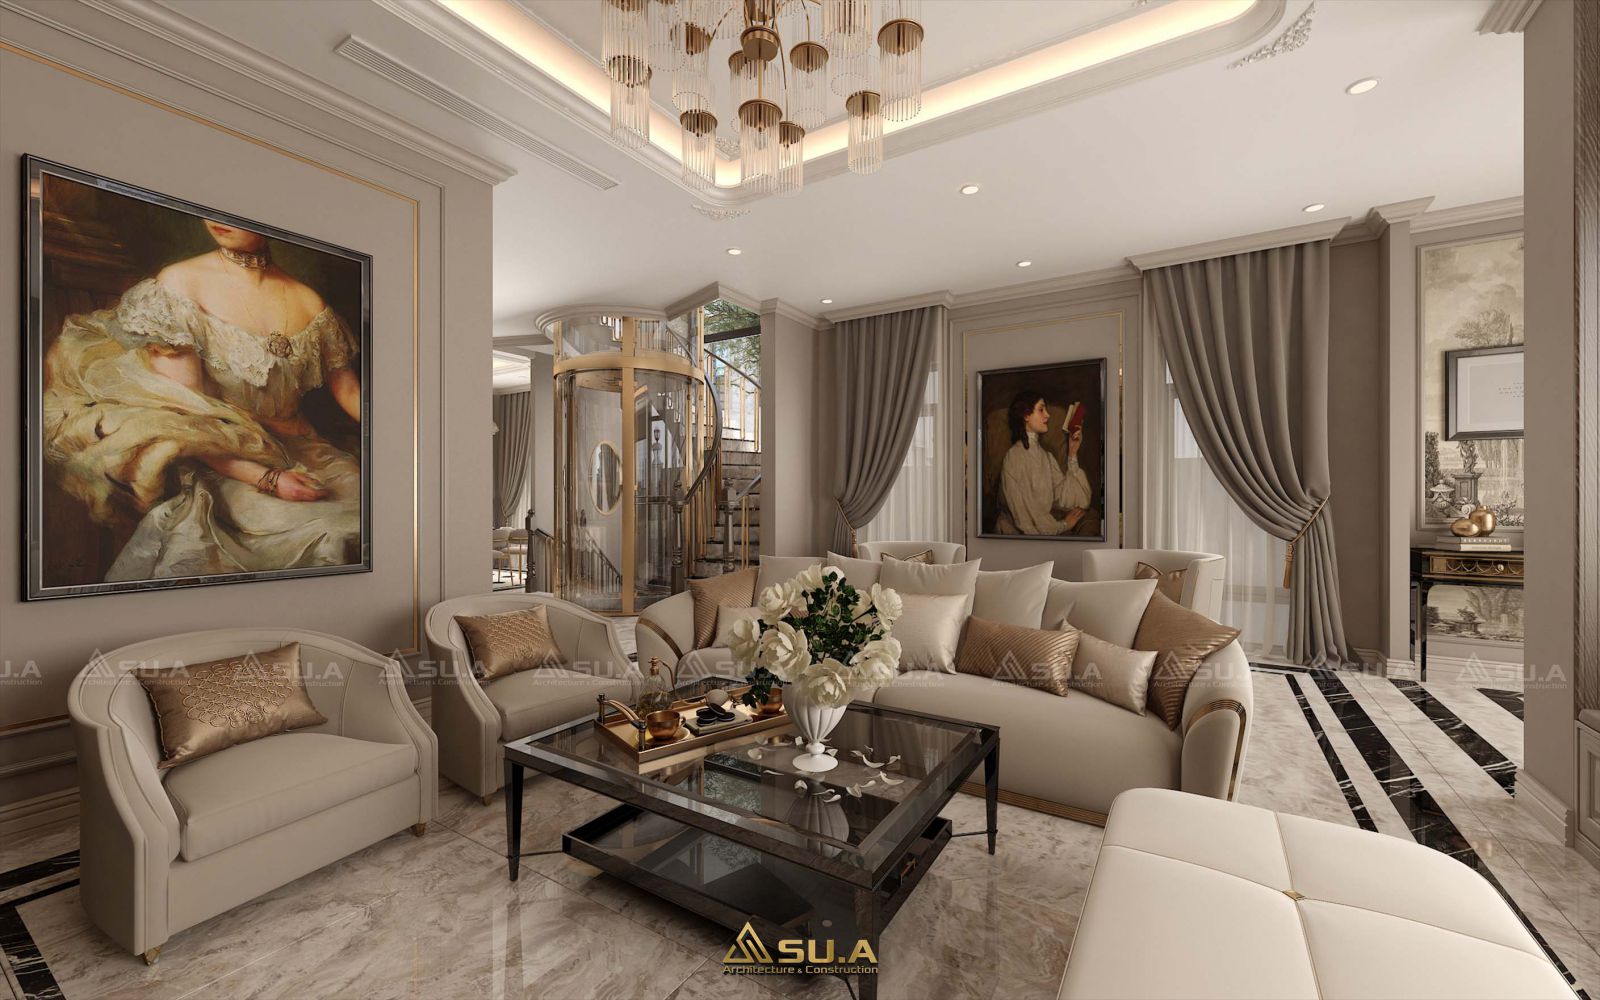 Thiết kế nội thất là tạo ra không gian sống đẹp với nhiều phong cách khác nhau